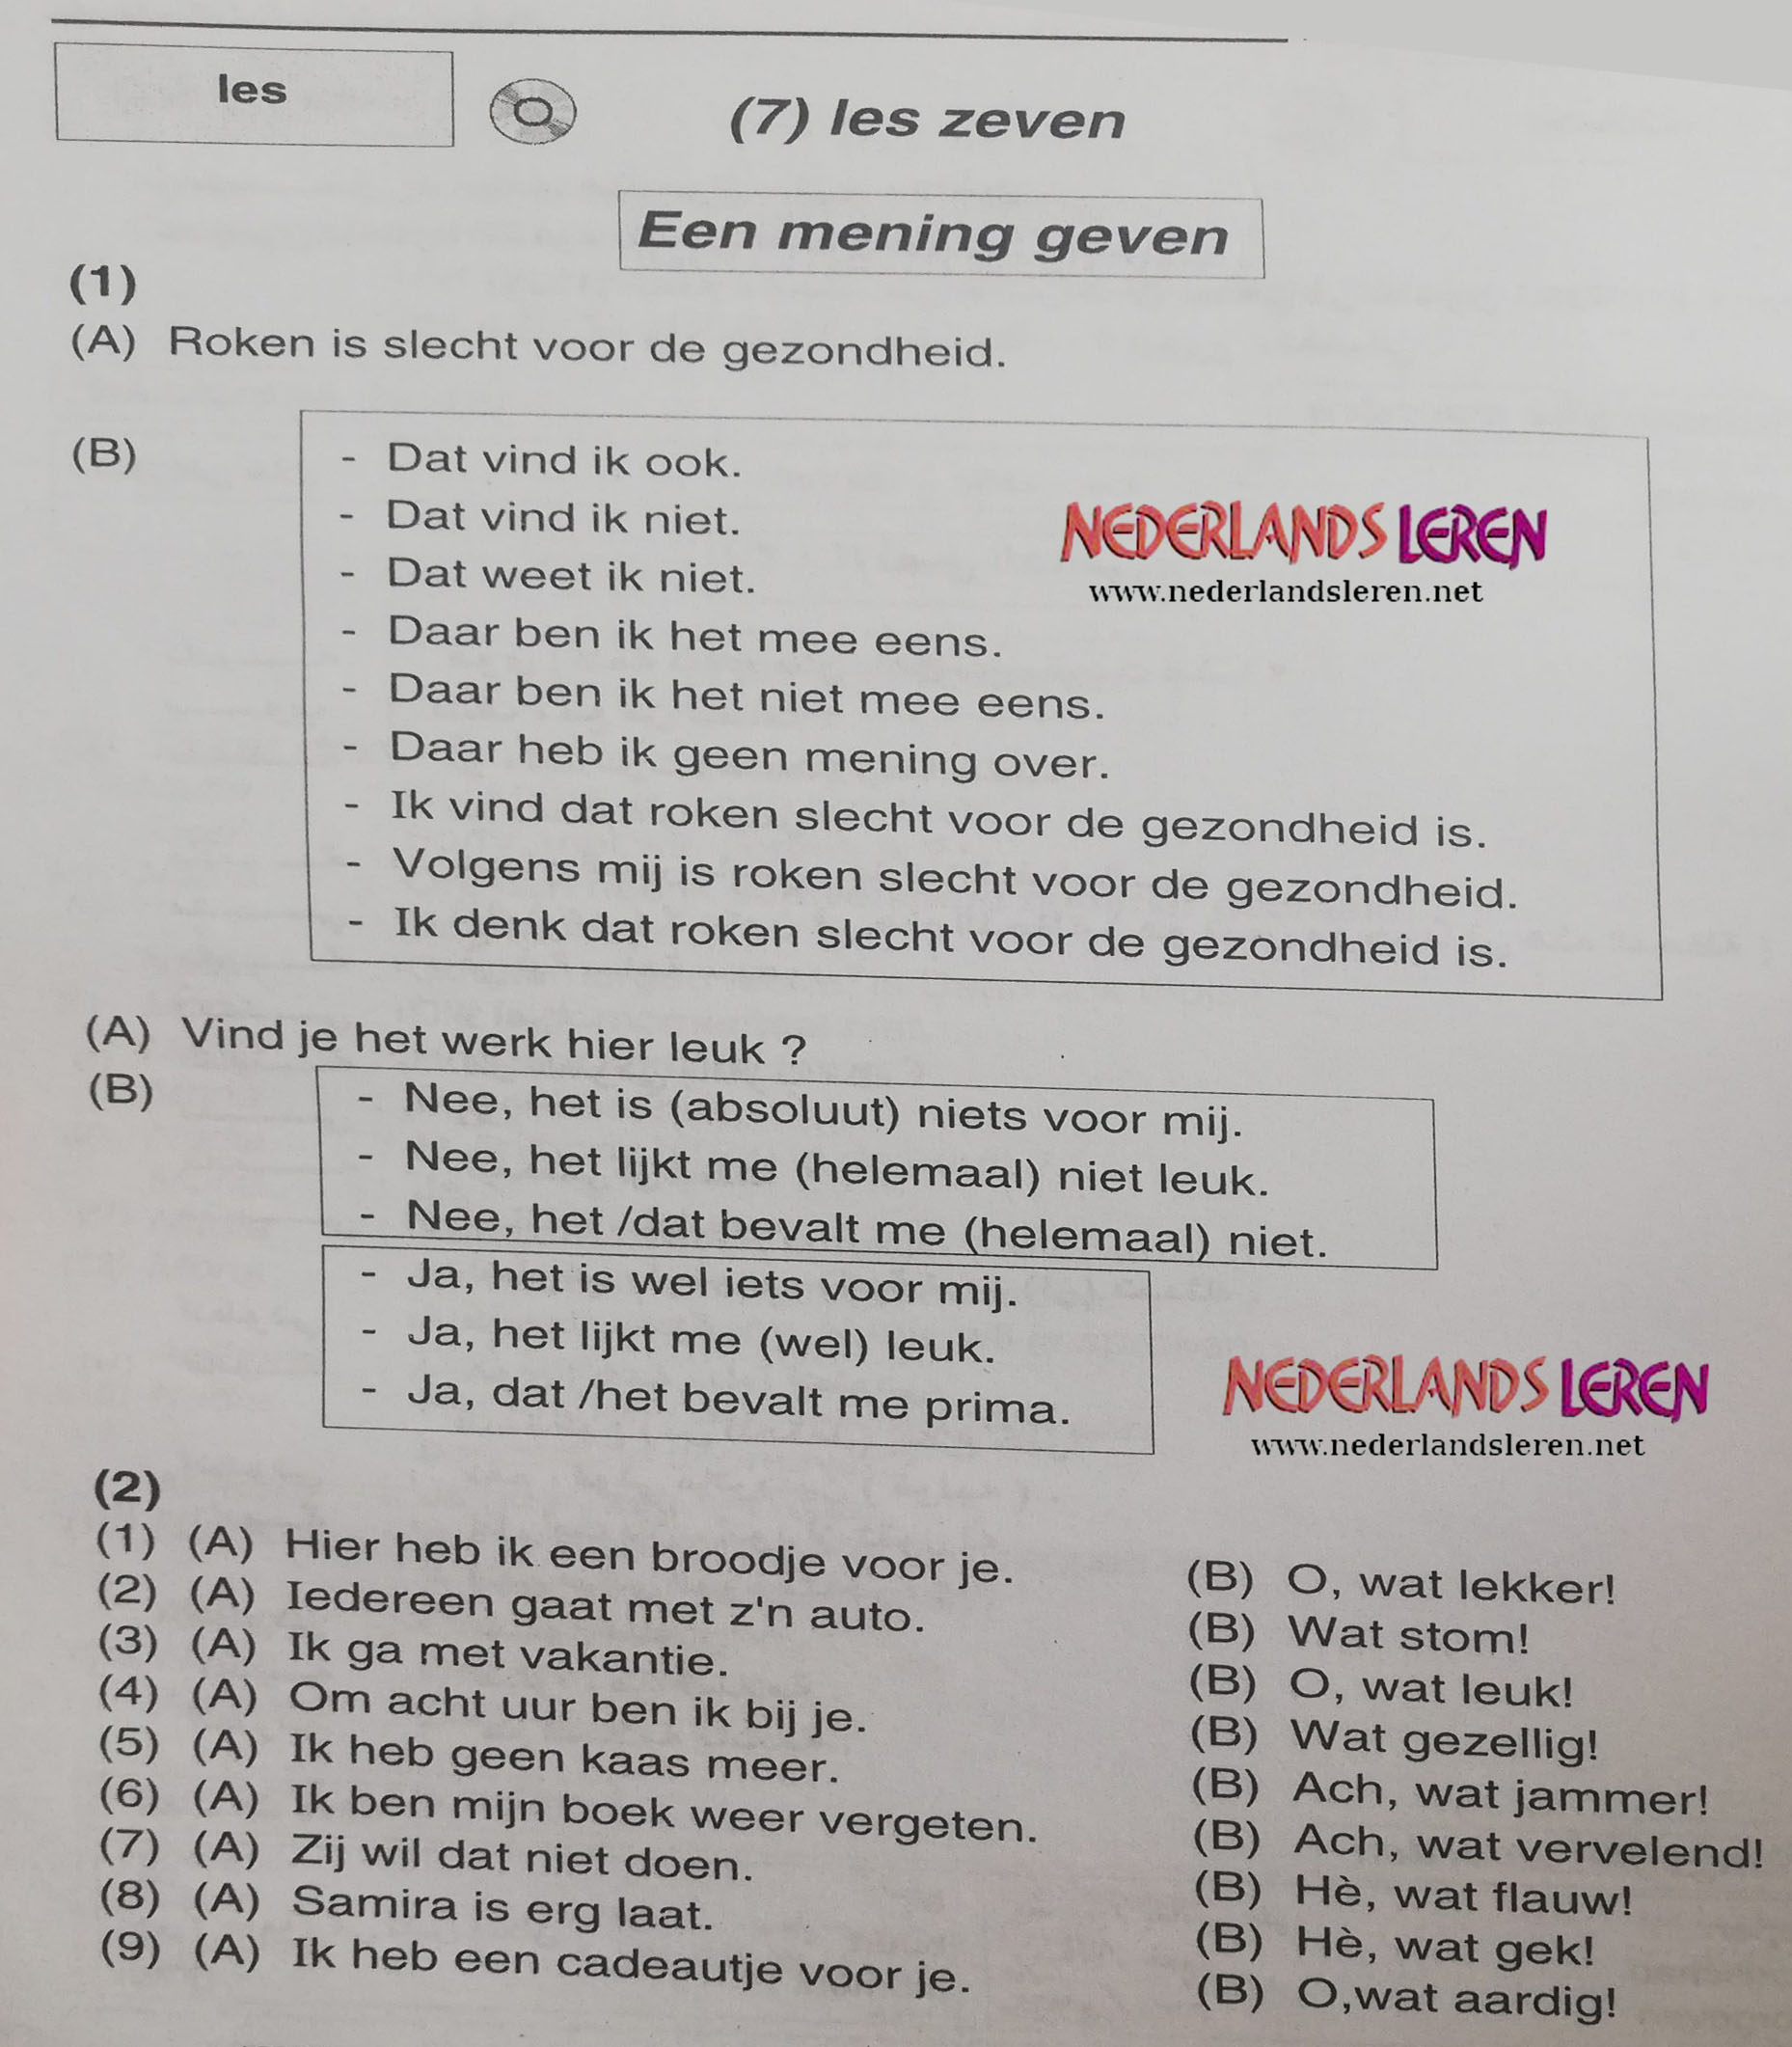 تعلم علي كيفية إعطاء رأى Een mening geven (مترجم) في اللغة الهولندية